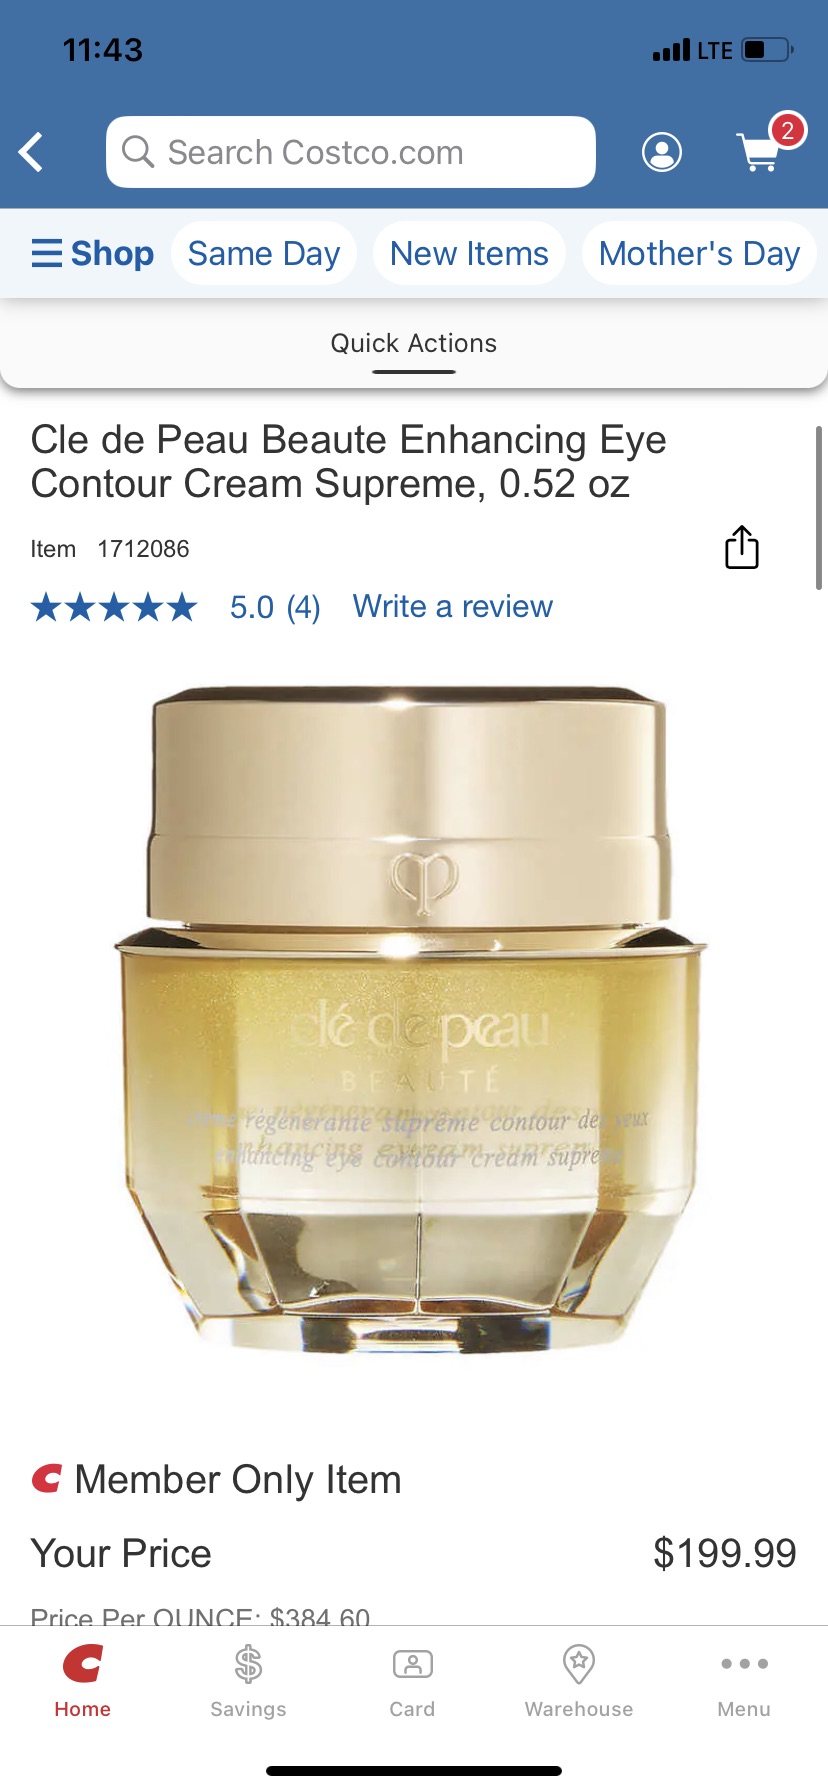 Cle de Peau Beaute Enhancing Eye Contour Cream Supreme, 0.52 oz | Costco